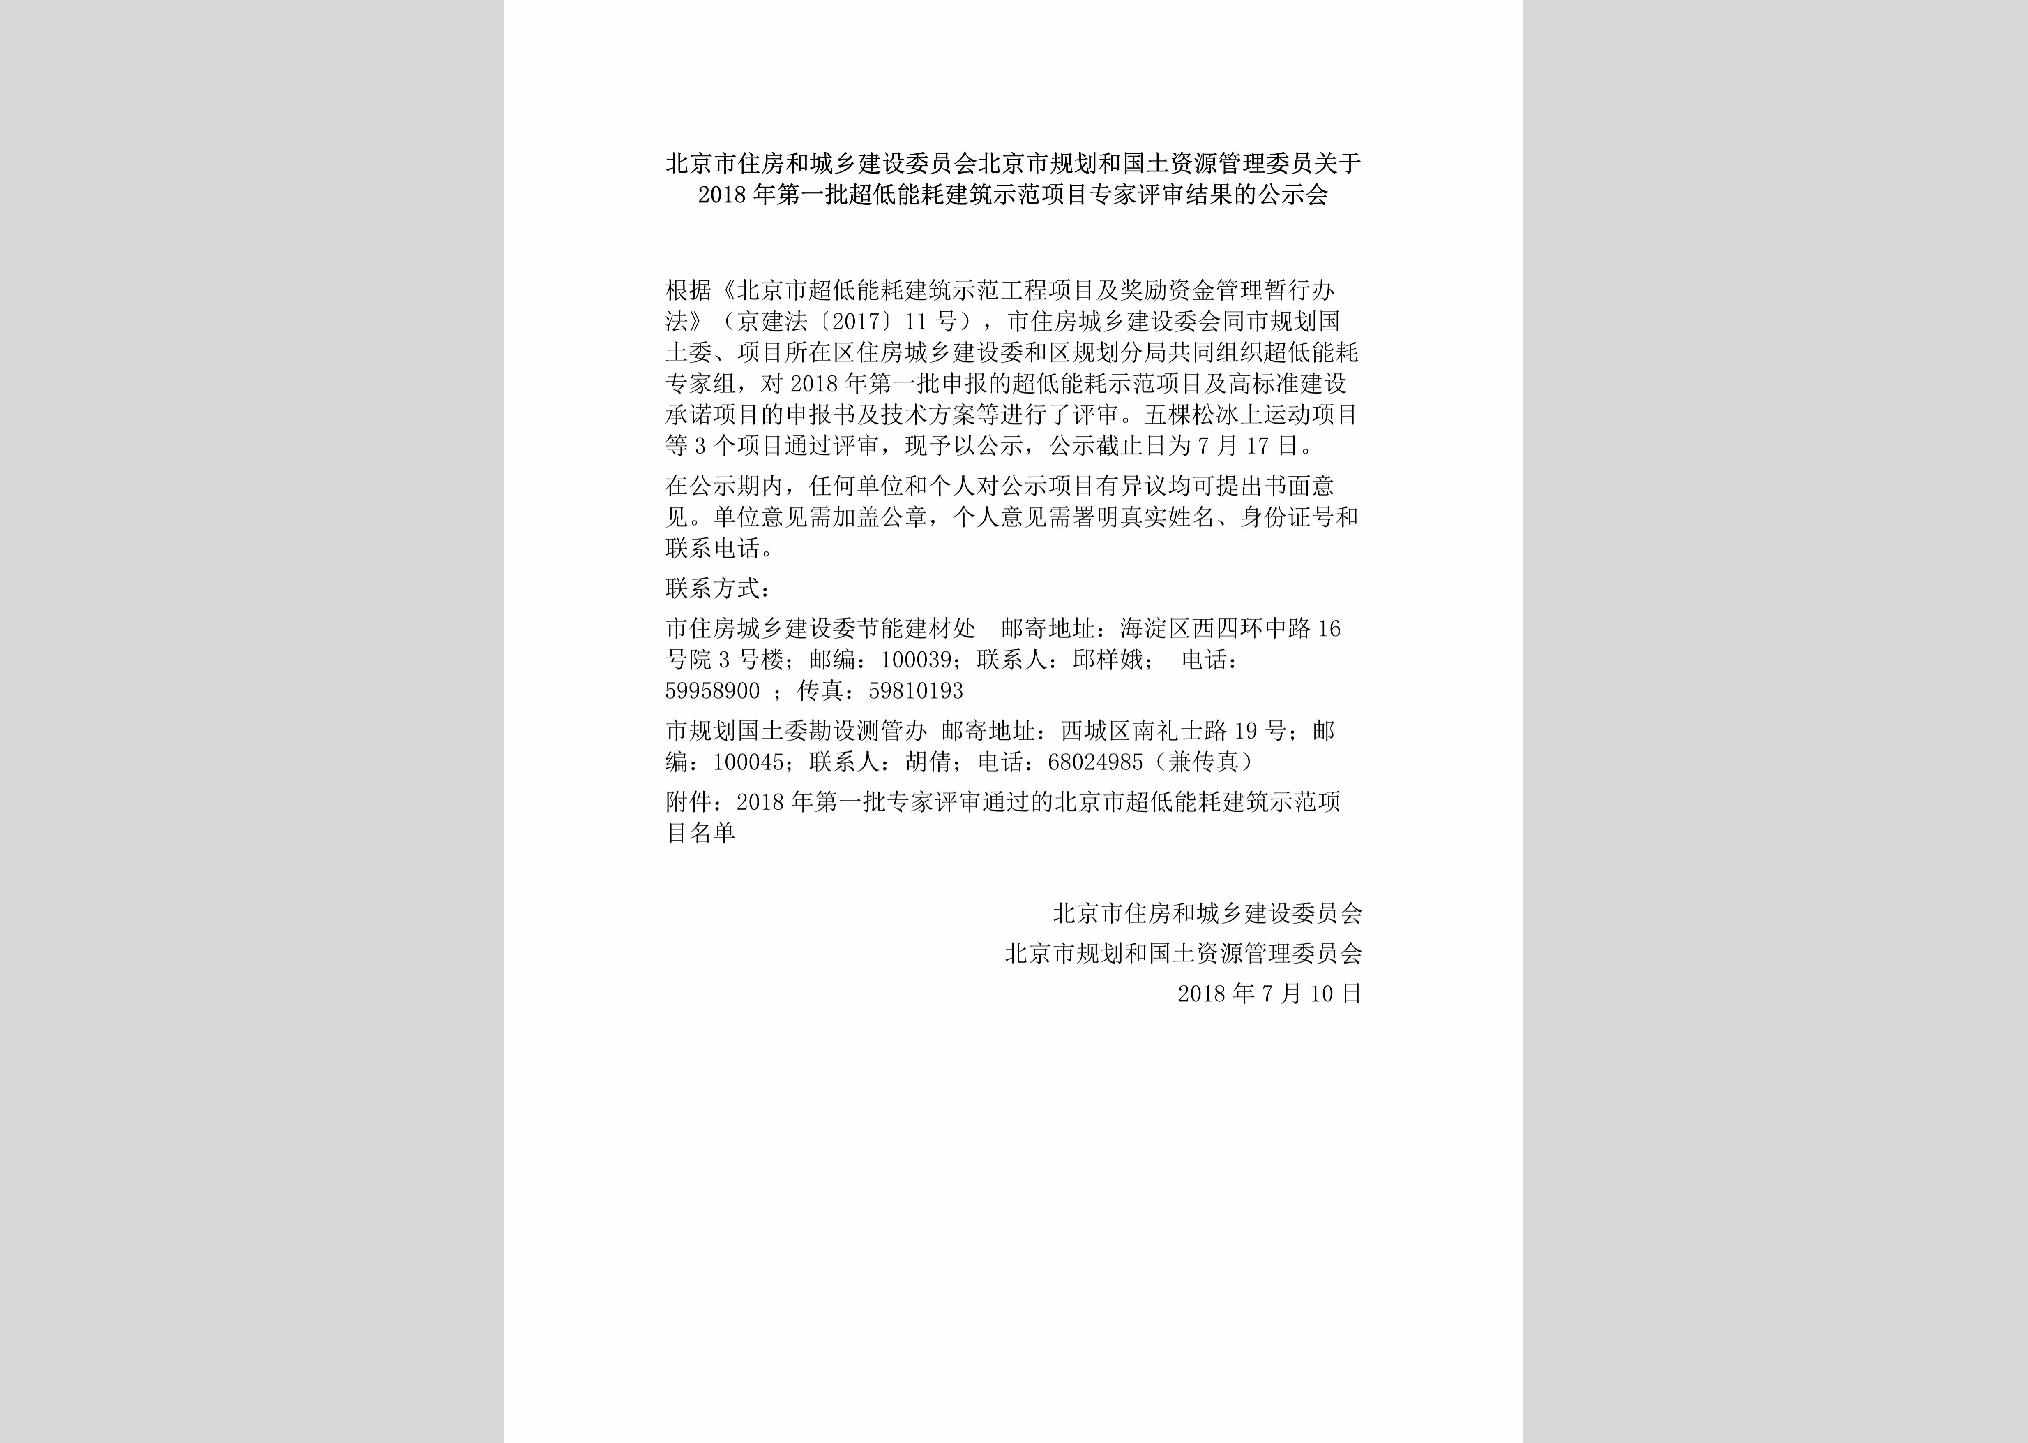 BJ-SFXMPSJG-2018：北京市住房和城乡建设委员会北京市规划和国土资源管理委员关于2018年第一批超低能耗建筑示范项目专家评审结果的公示会